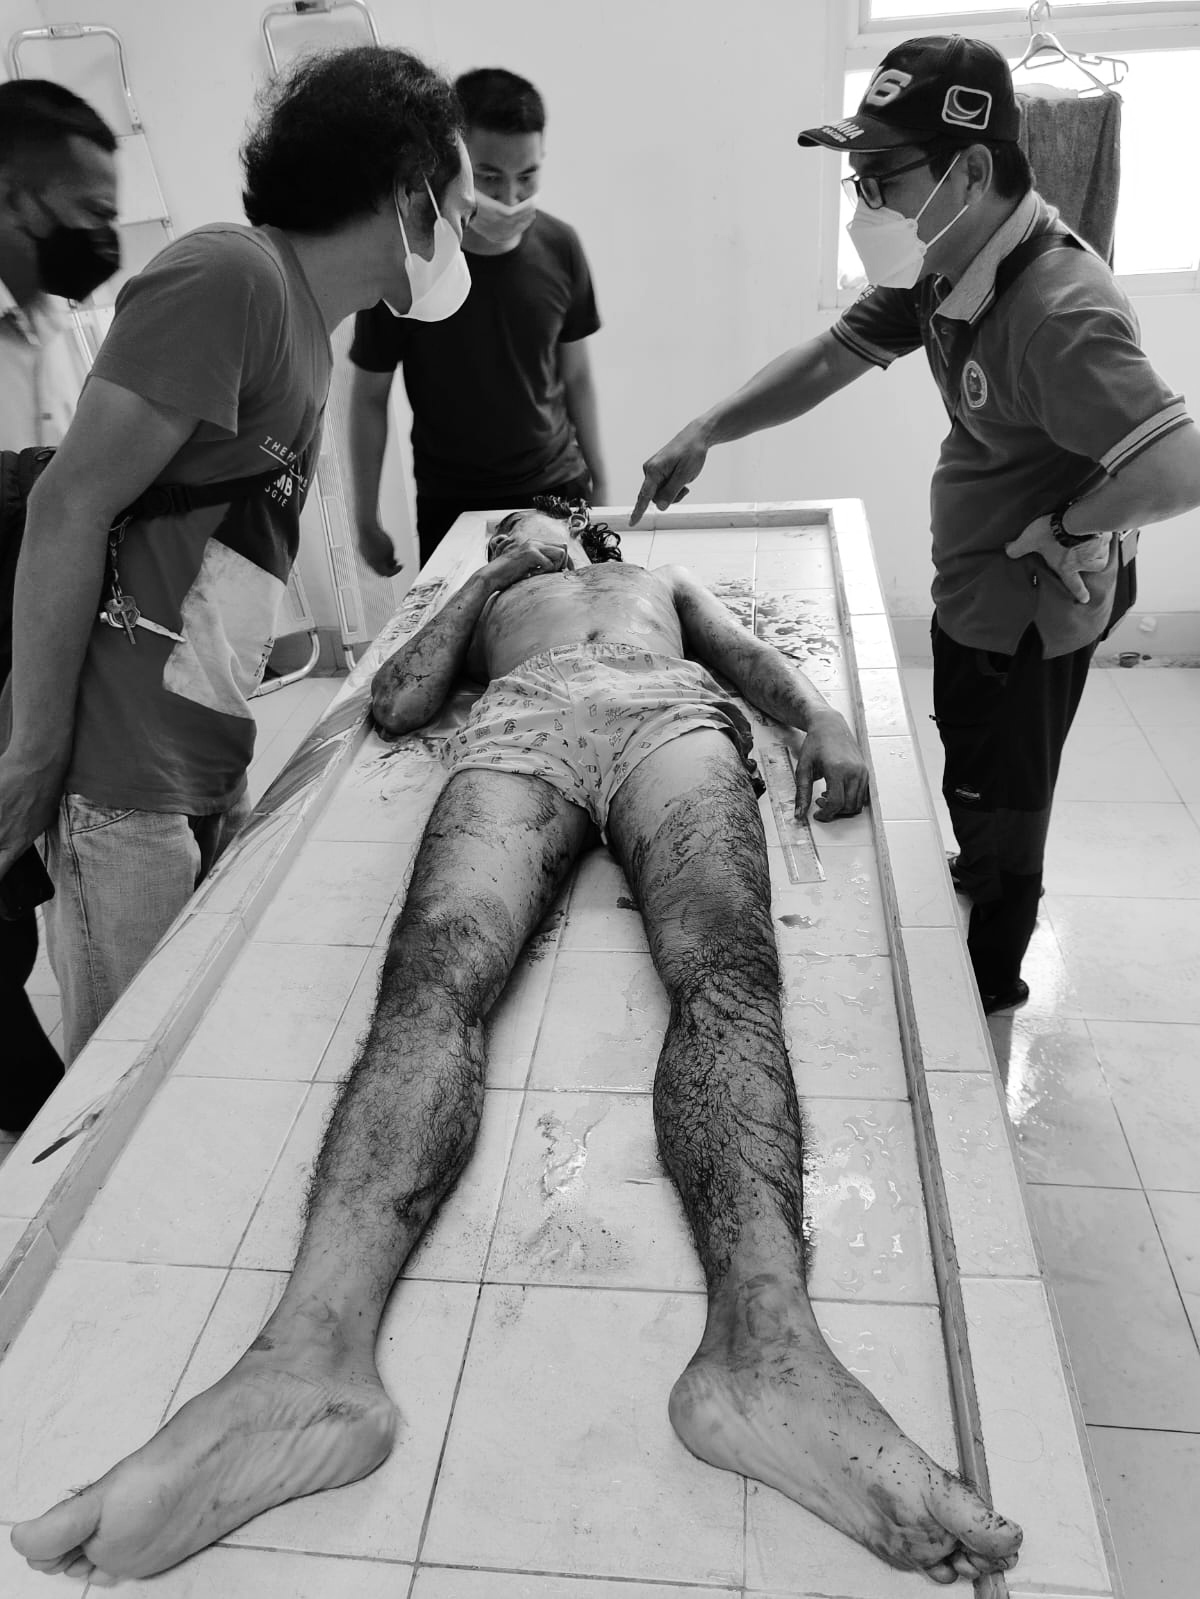 Diduga Pegawai RSUD Idaman Banjarbaru Tewas Bersimbah Darah di Kamar Mandi